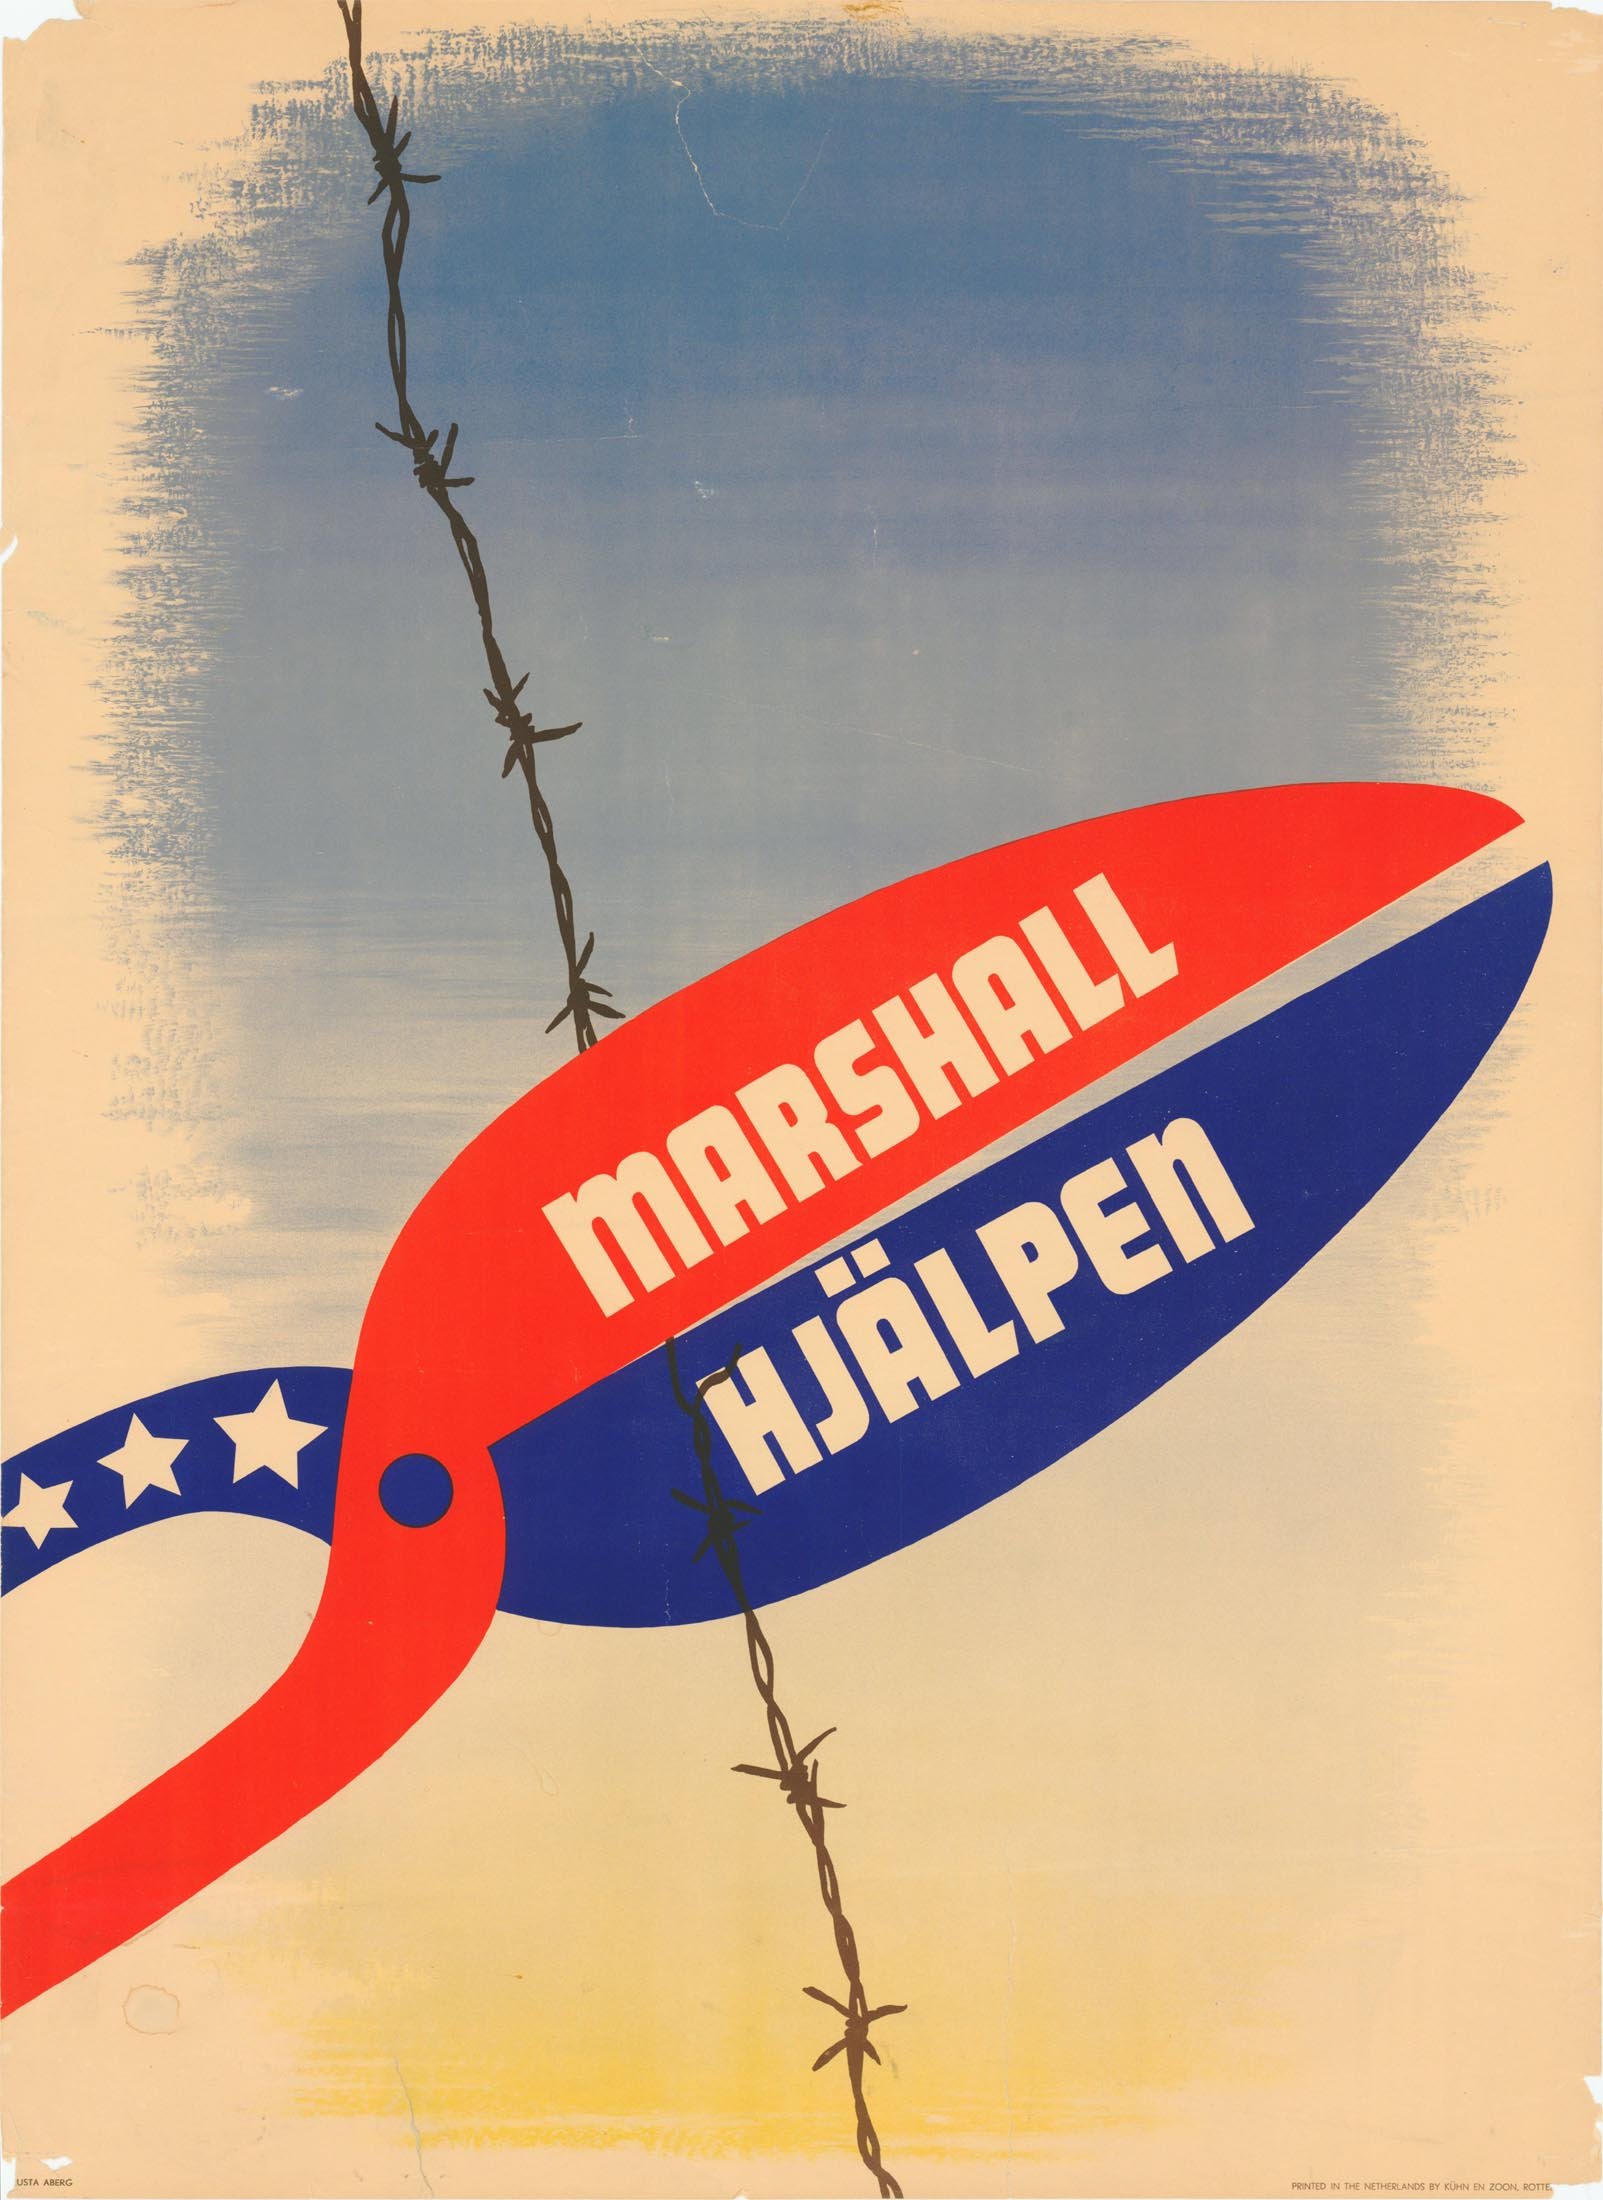  Marshall Aid "Marshall Hjalpen" by Justa Abert, 1950.  George C. Marshall Foundation .  